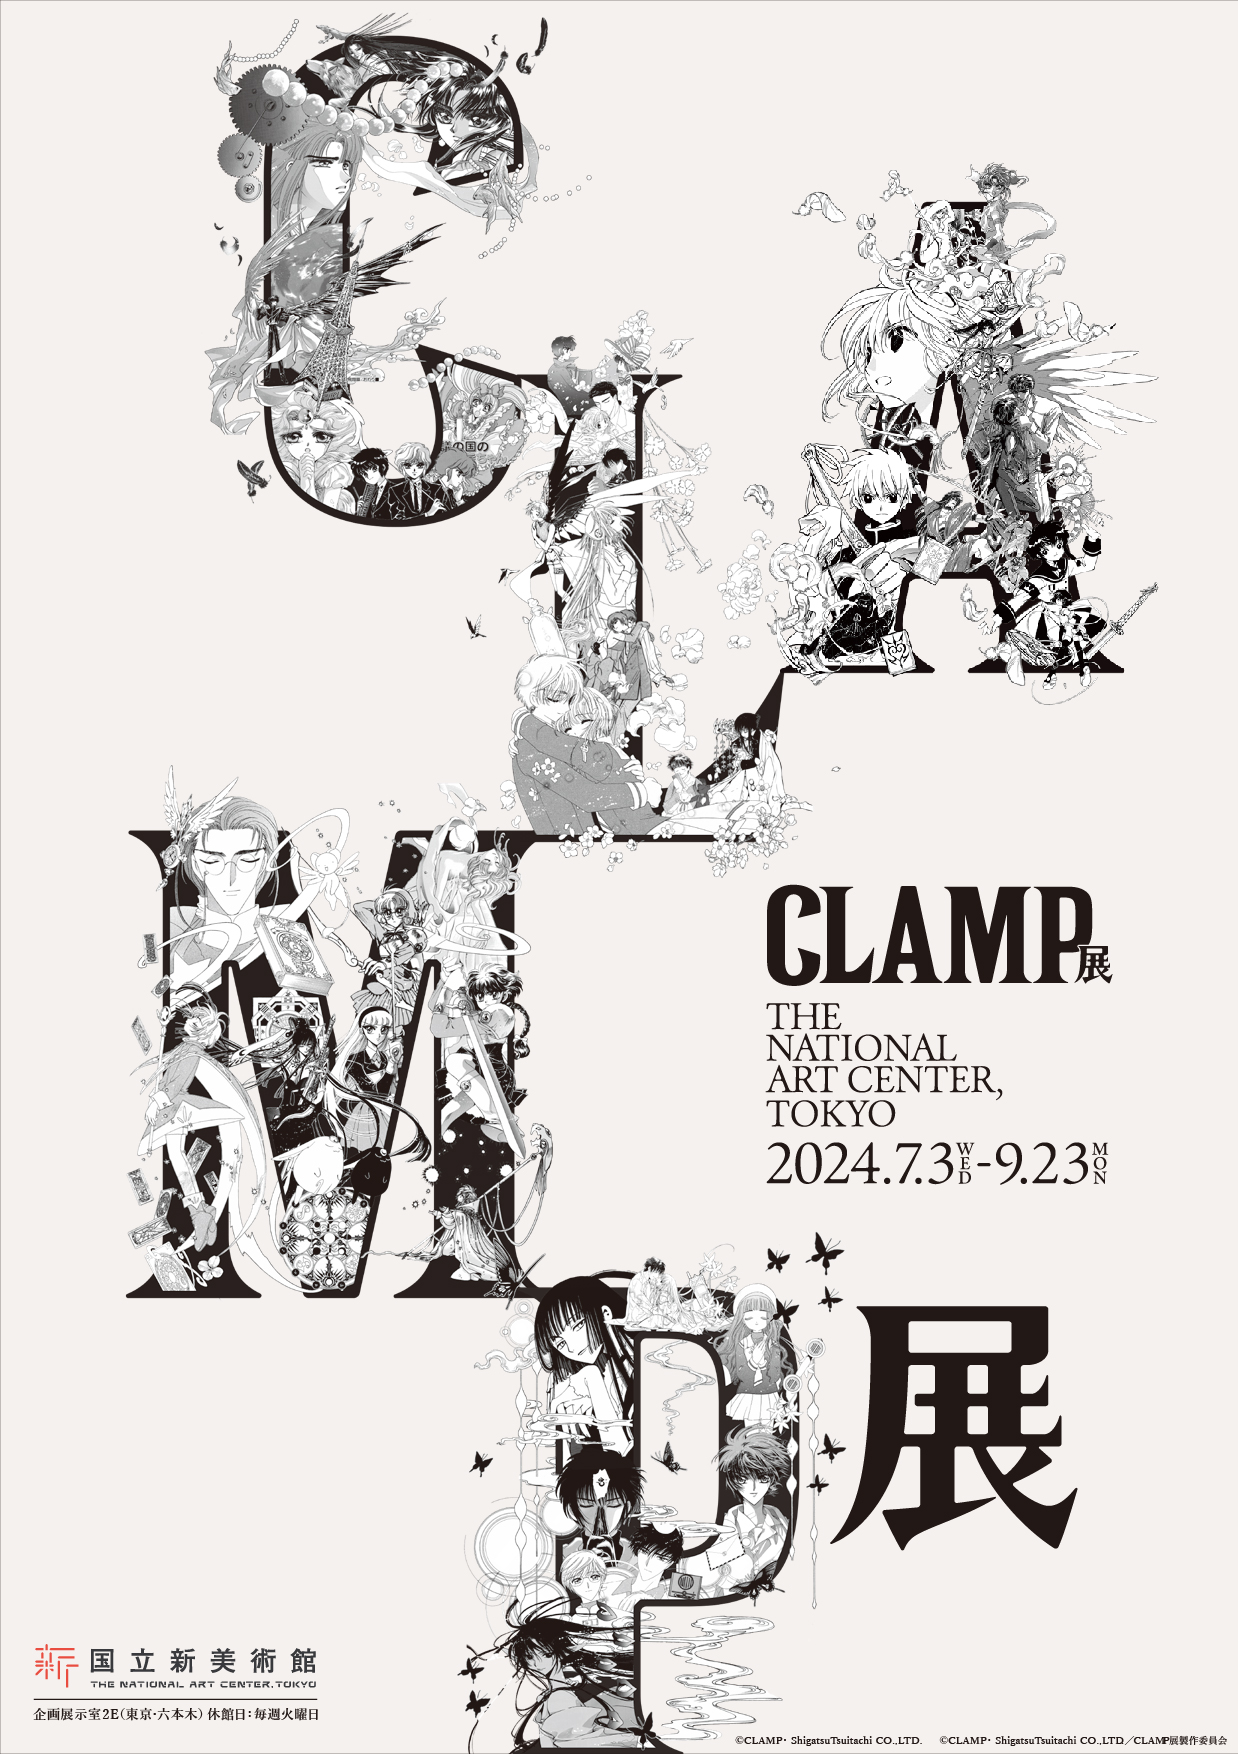 【品川プリンスホテル】作品の世界を体感するコラボレーションルーム『CLAMP展』とのコラボレーションステイ